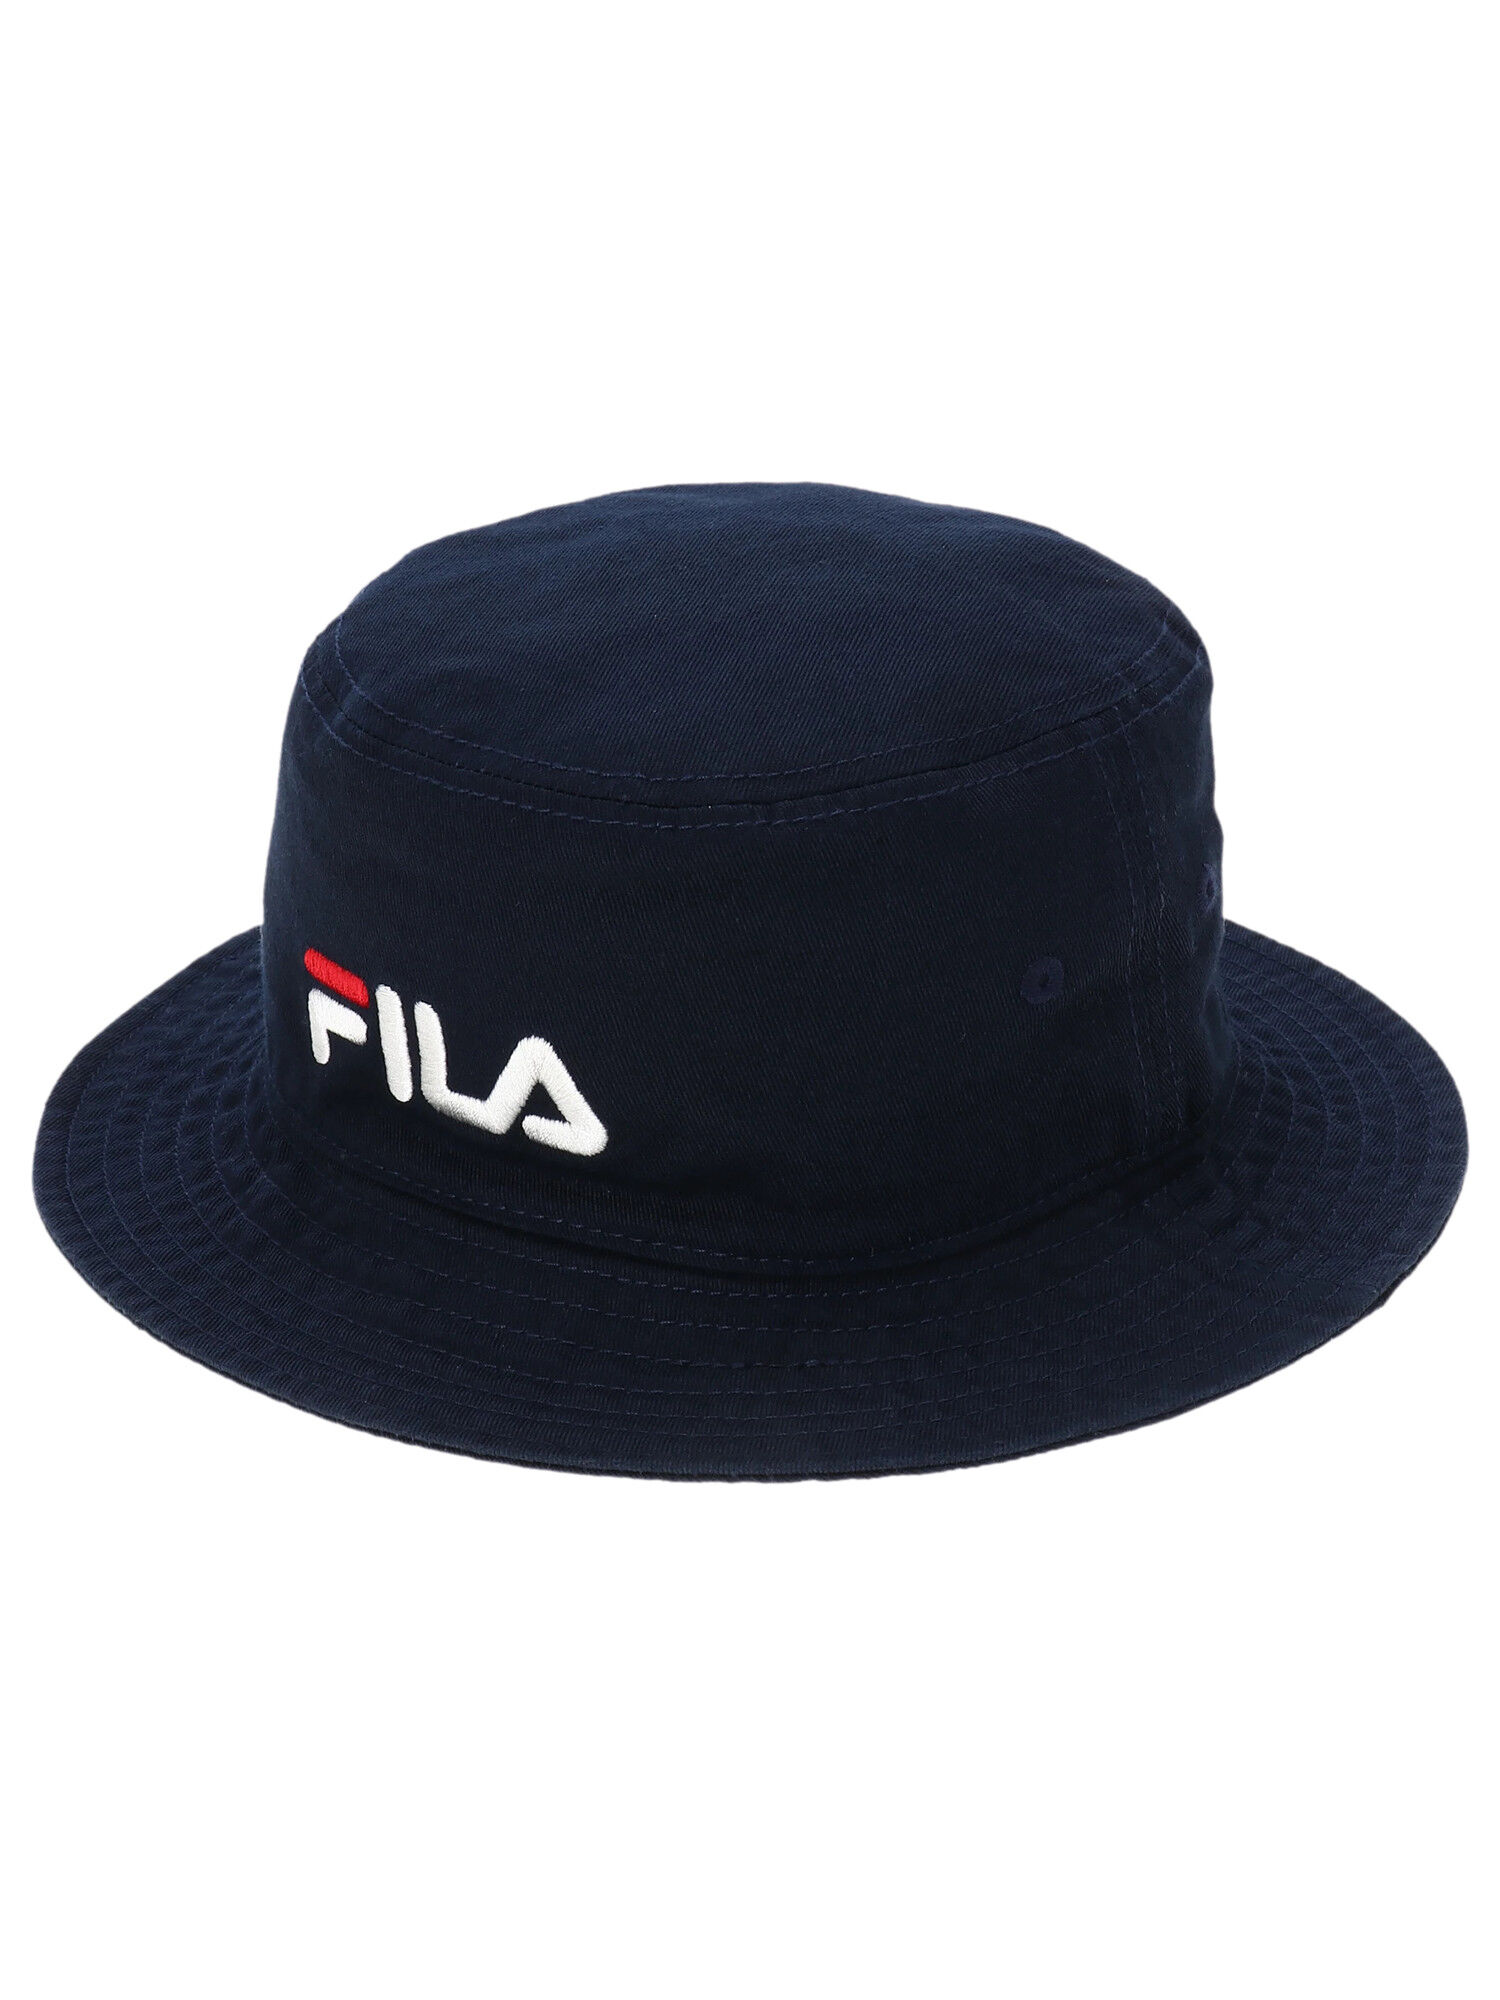 FILA TWILL BUCKET HAT